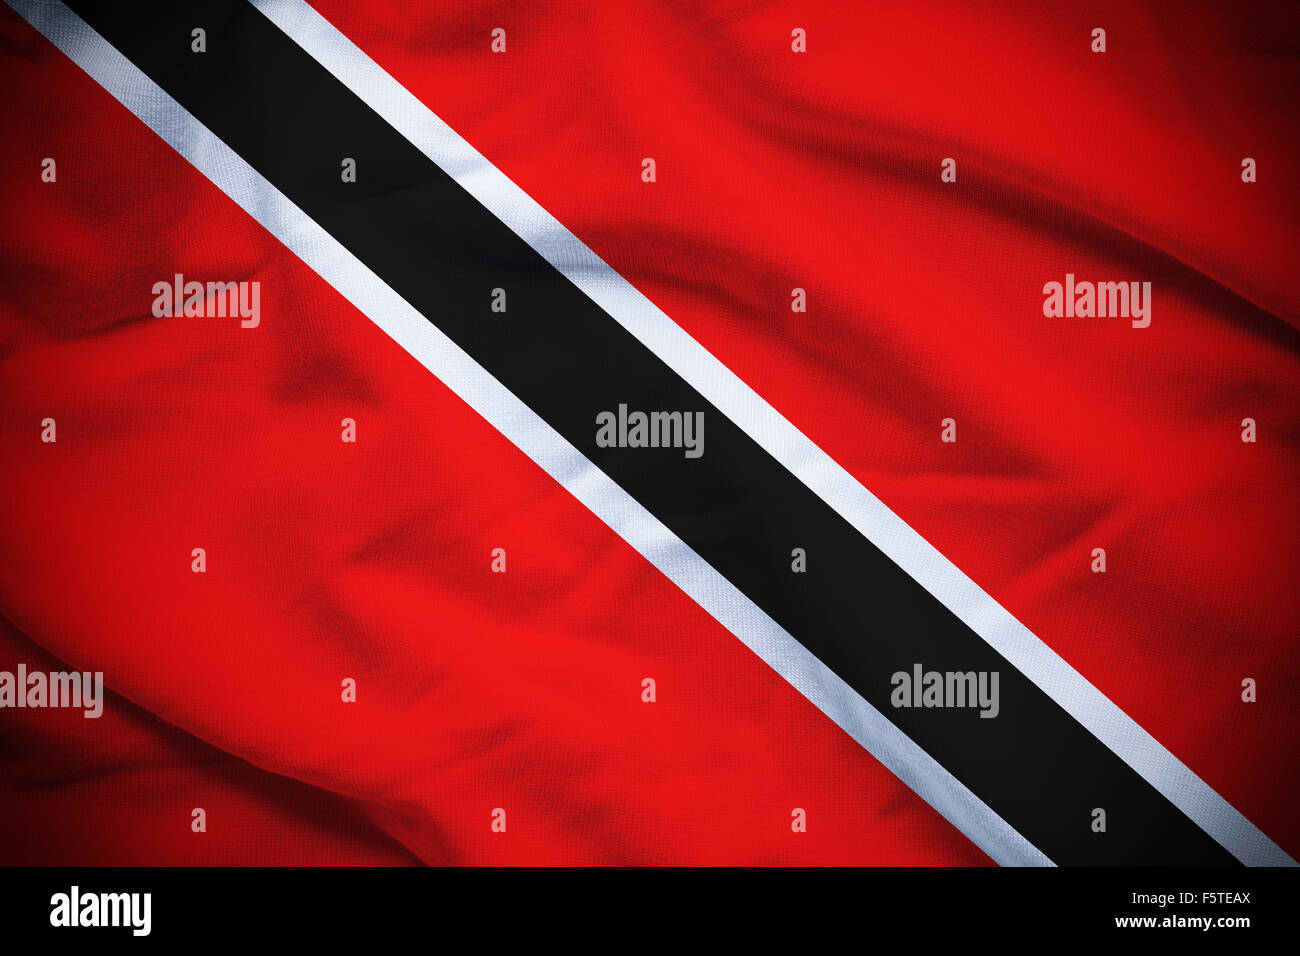 Ondulado y rizado bandera nacional de Trinidad y Tobago de fondo. Foto de stock